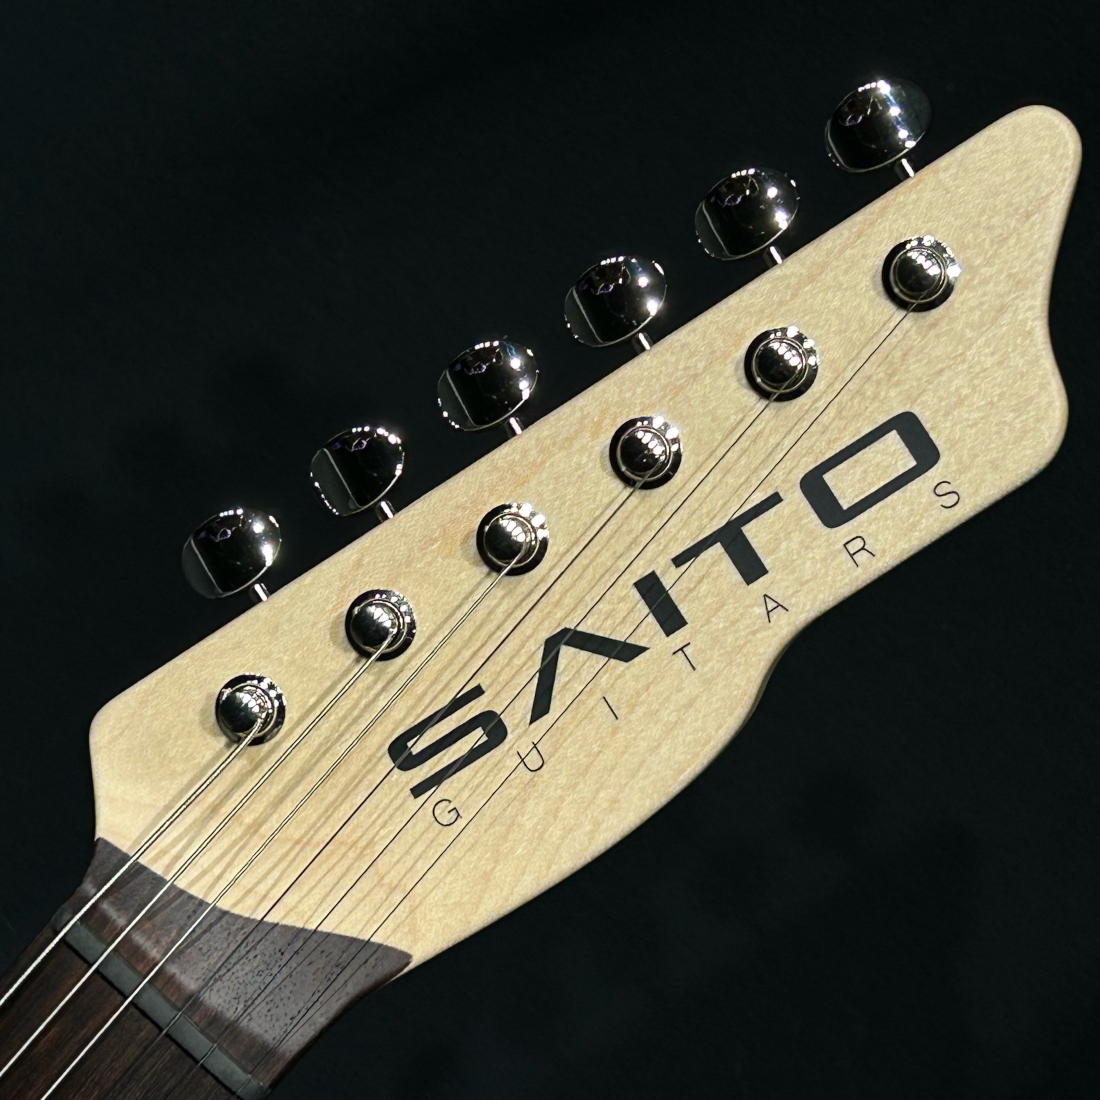 SAITO Guitars S-622 Kannagi MRA SH 齋藤楽器工房 サイトーギター